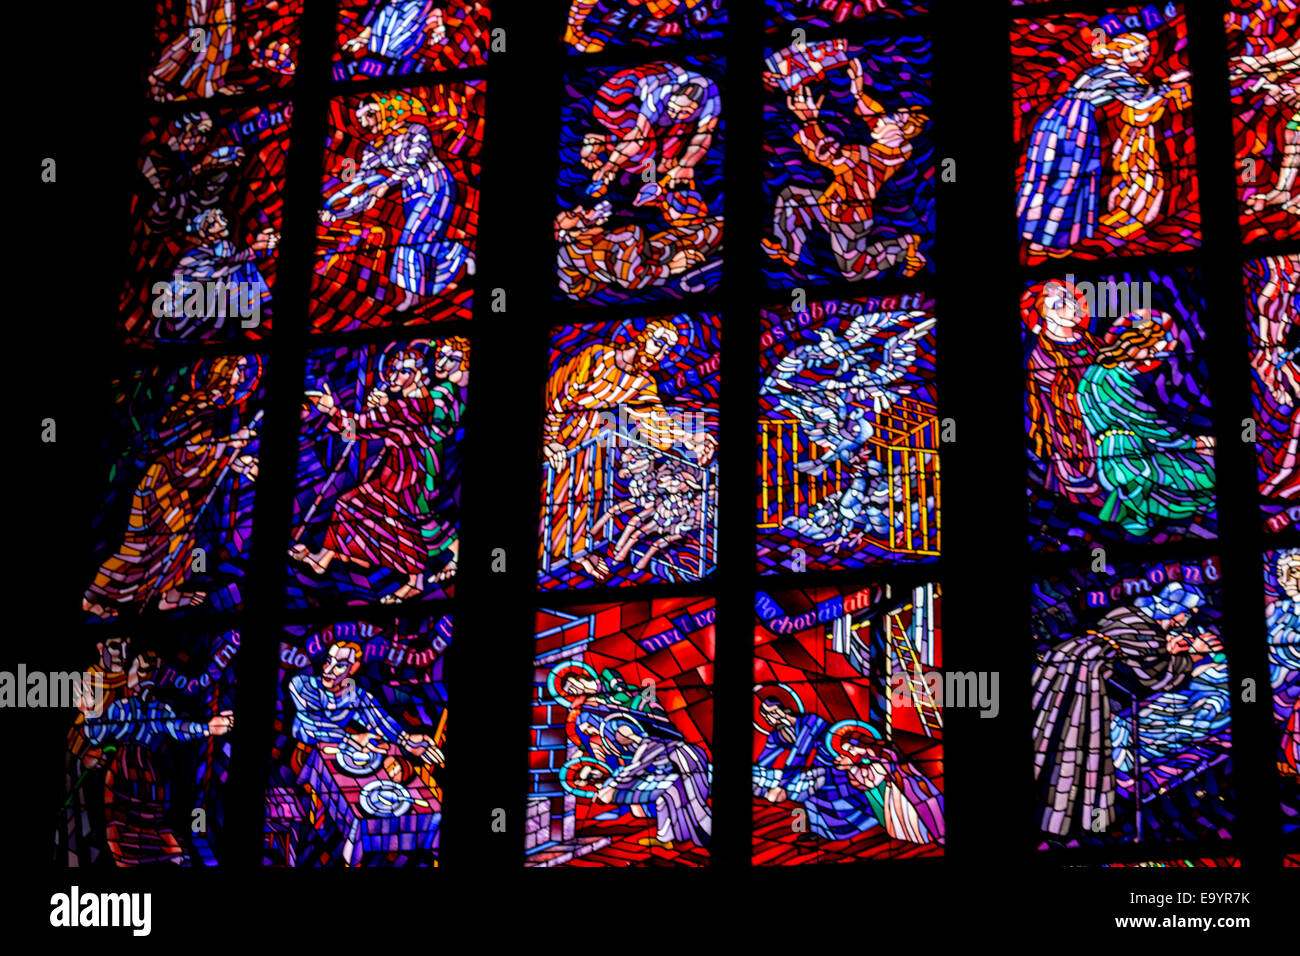 La transparence de la fenêtre de l'autocollant à l'intérieur de la cathédrale St Vitus à Prague, avec une église gothique sombre gardée par des tours : la gargouille Banque D'Images